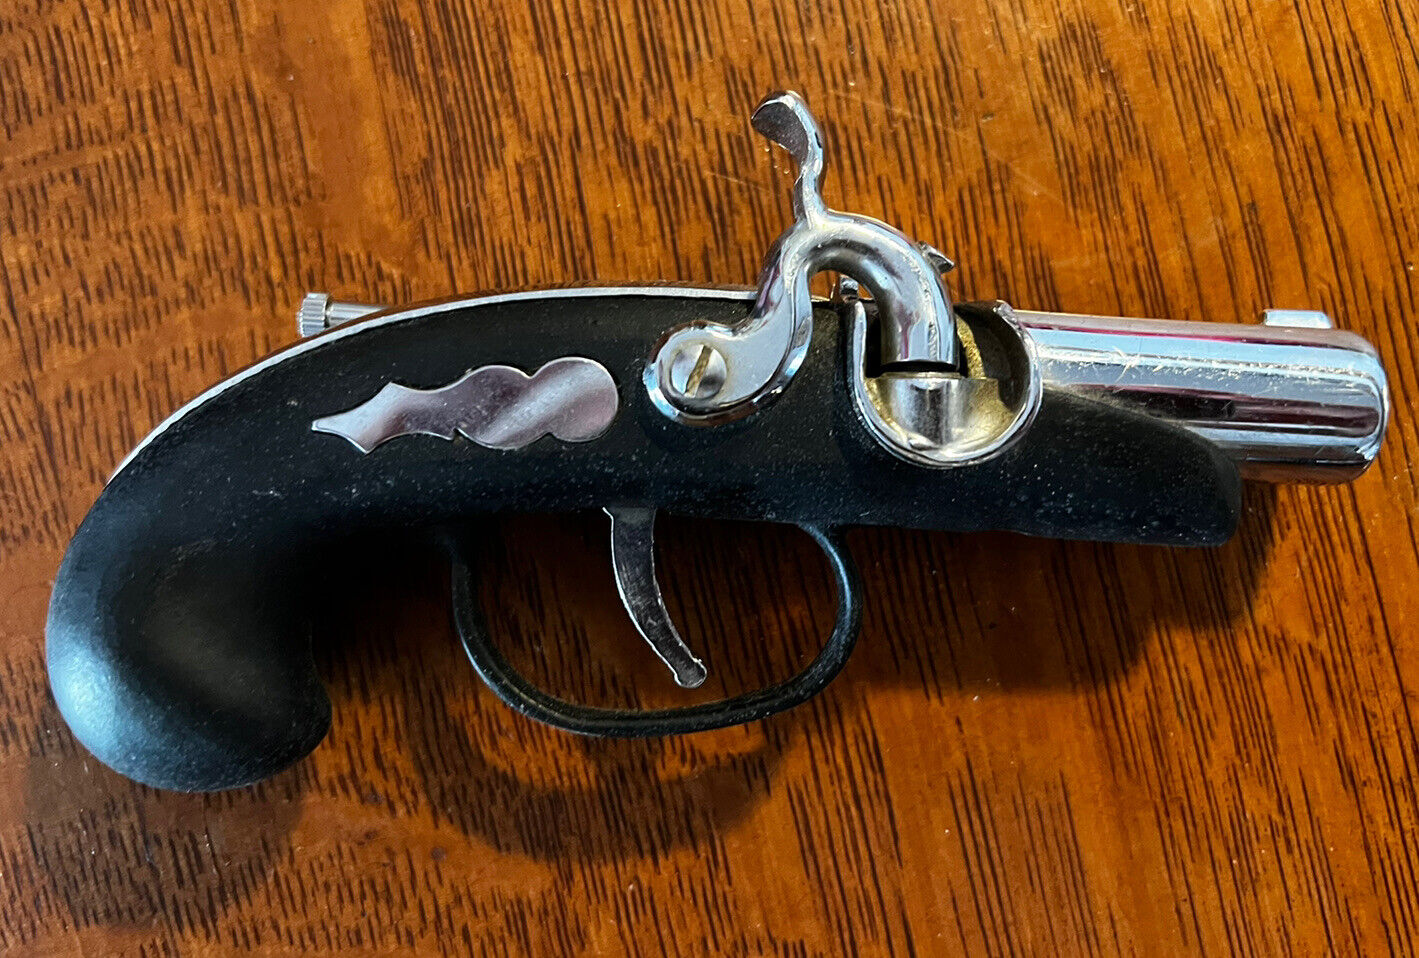 Vintage Derringer Flintlock Pistol Cigarette Lighter Sold As Is May Need Repair